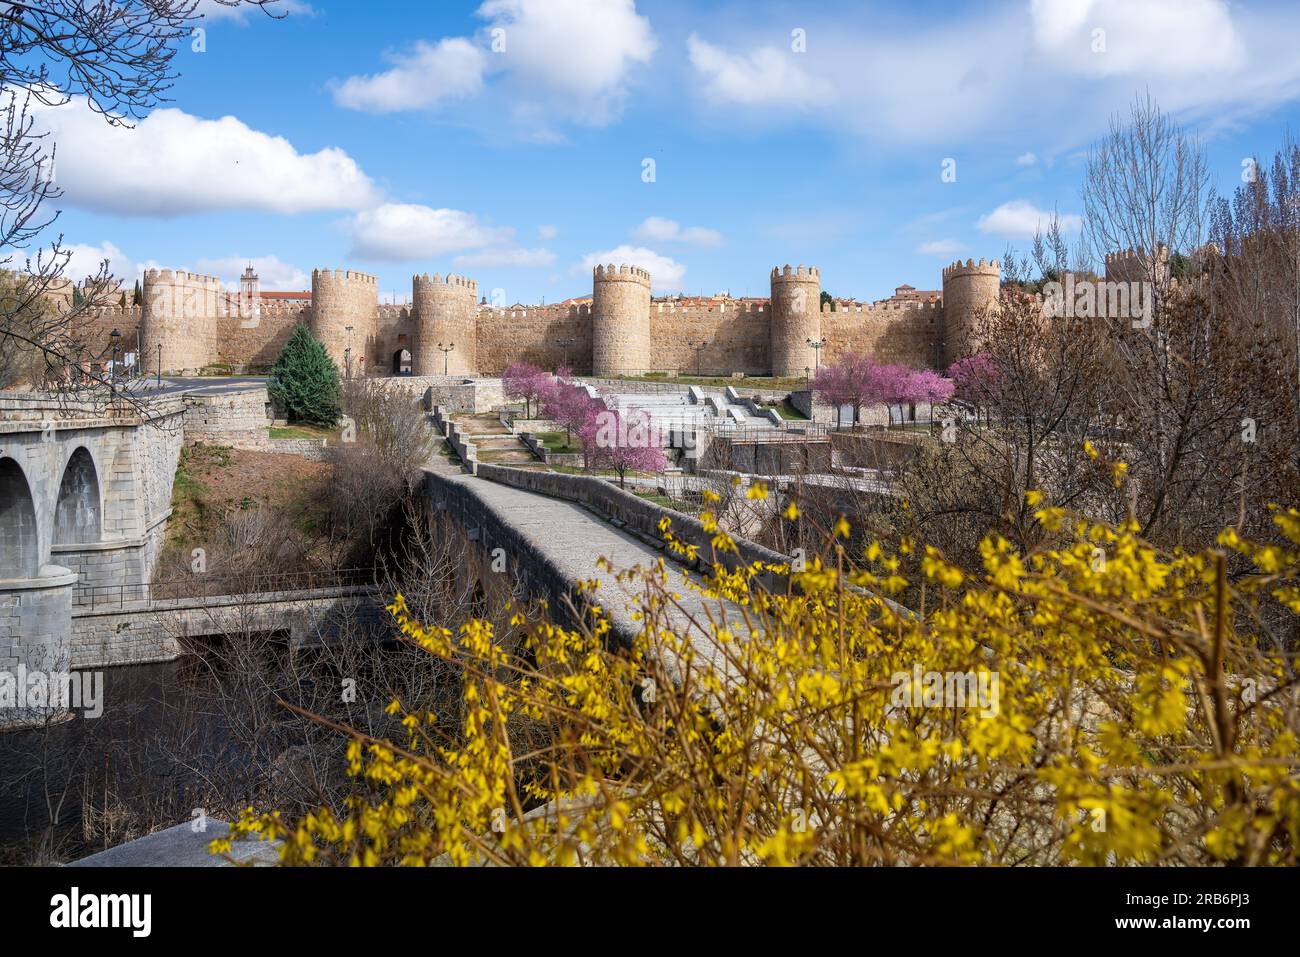 Avila Medieval Walls and Roman Bridge - Avila, Spain Stock Photo